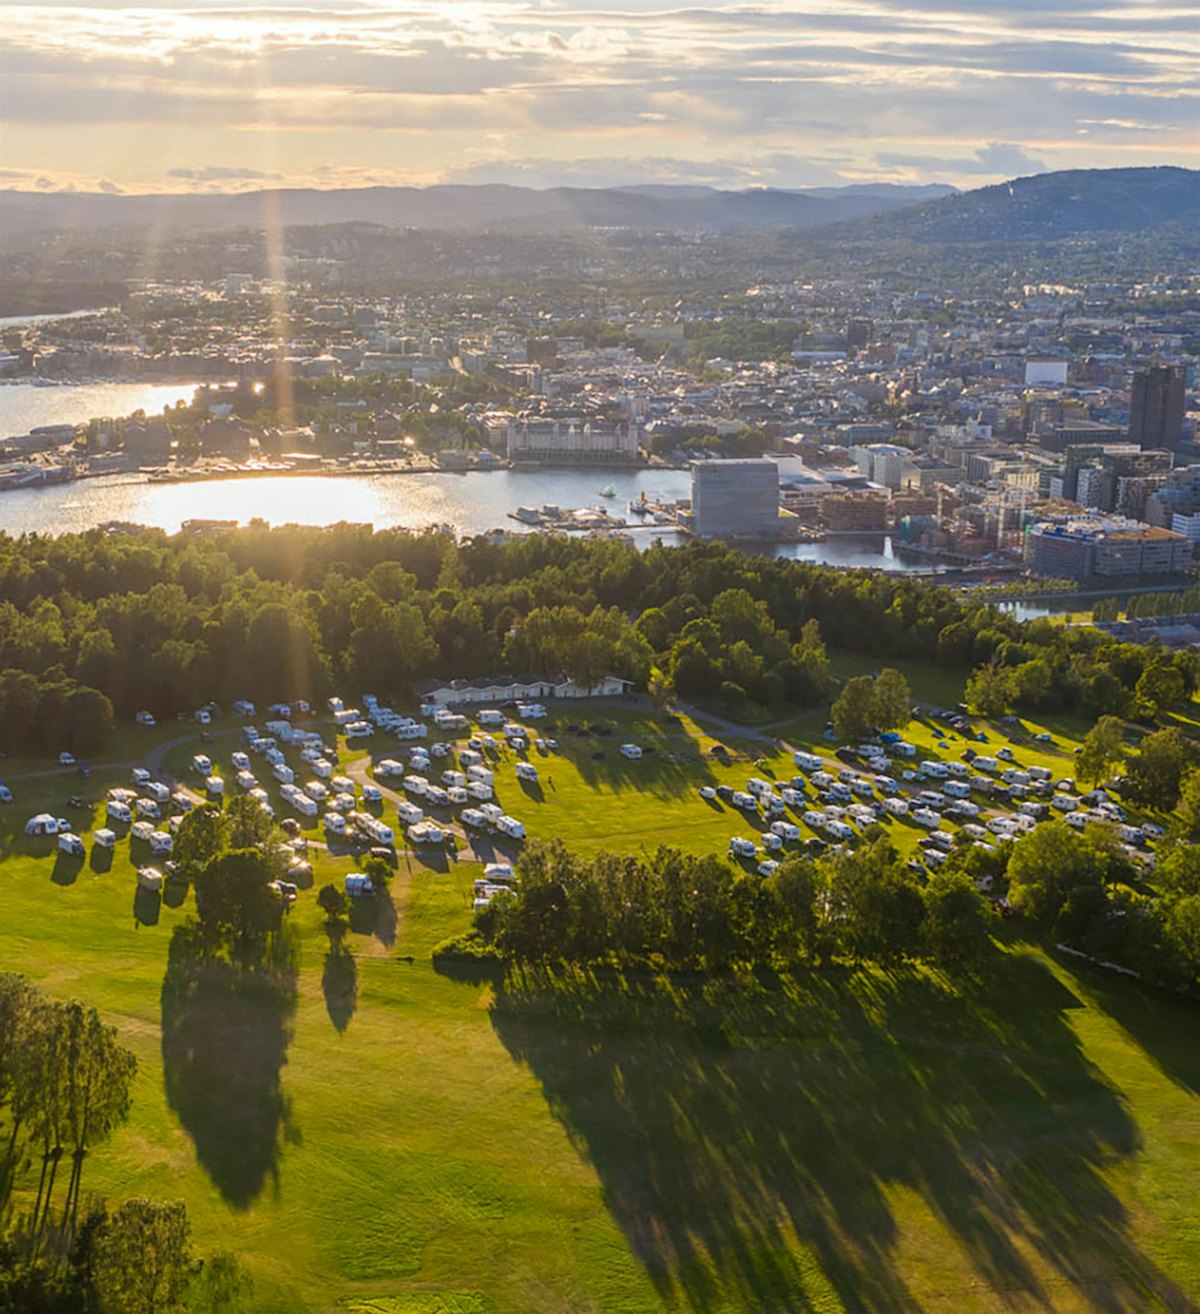 Topcamp Ekeberg, Oslofjord und Stadtzentrum von Oslo im Gegenlicht. Schönes Drohnenfoto